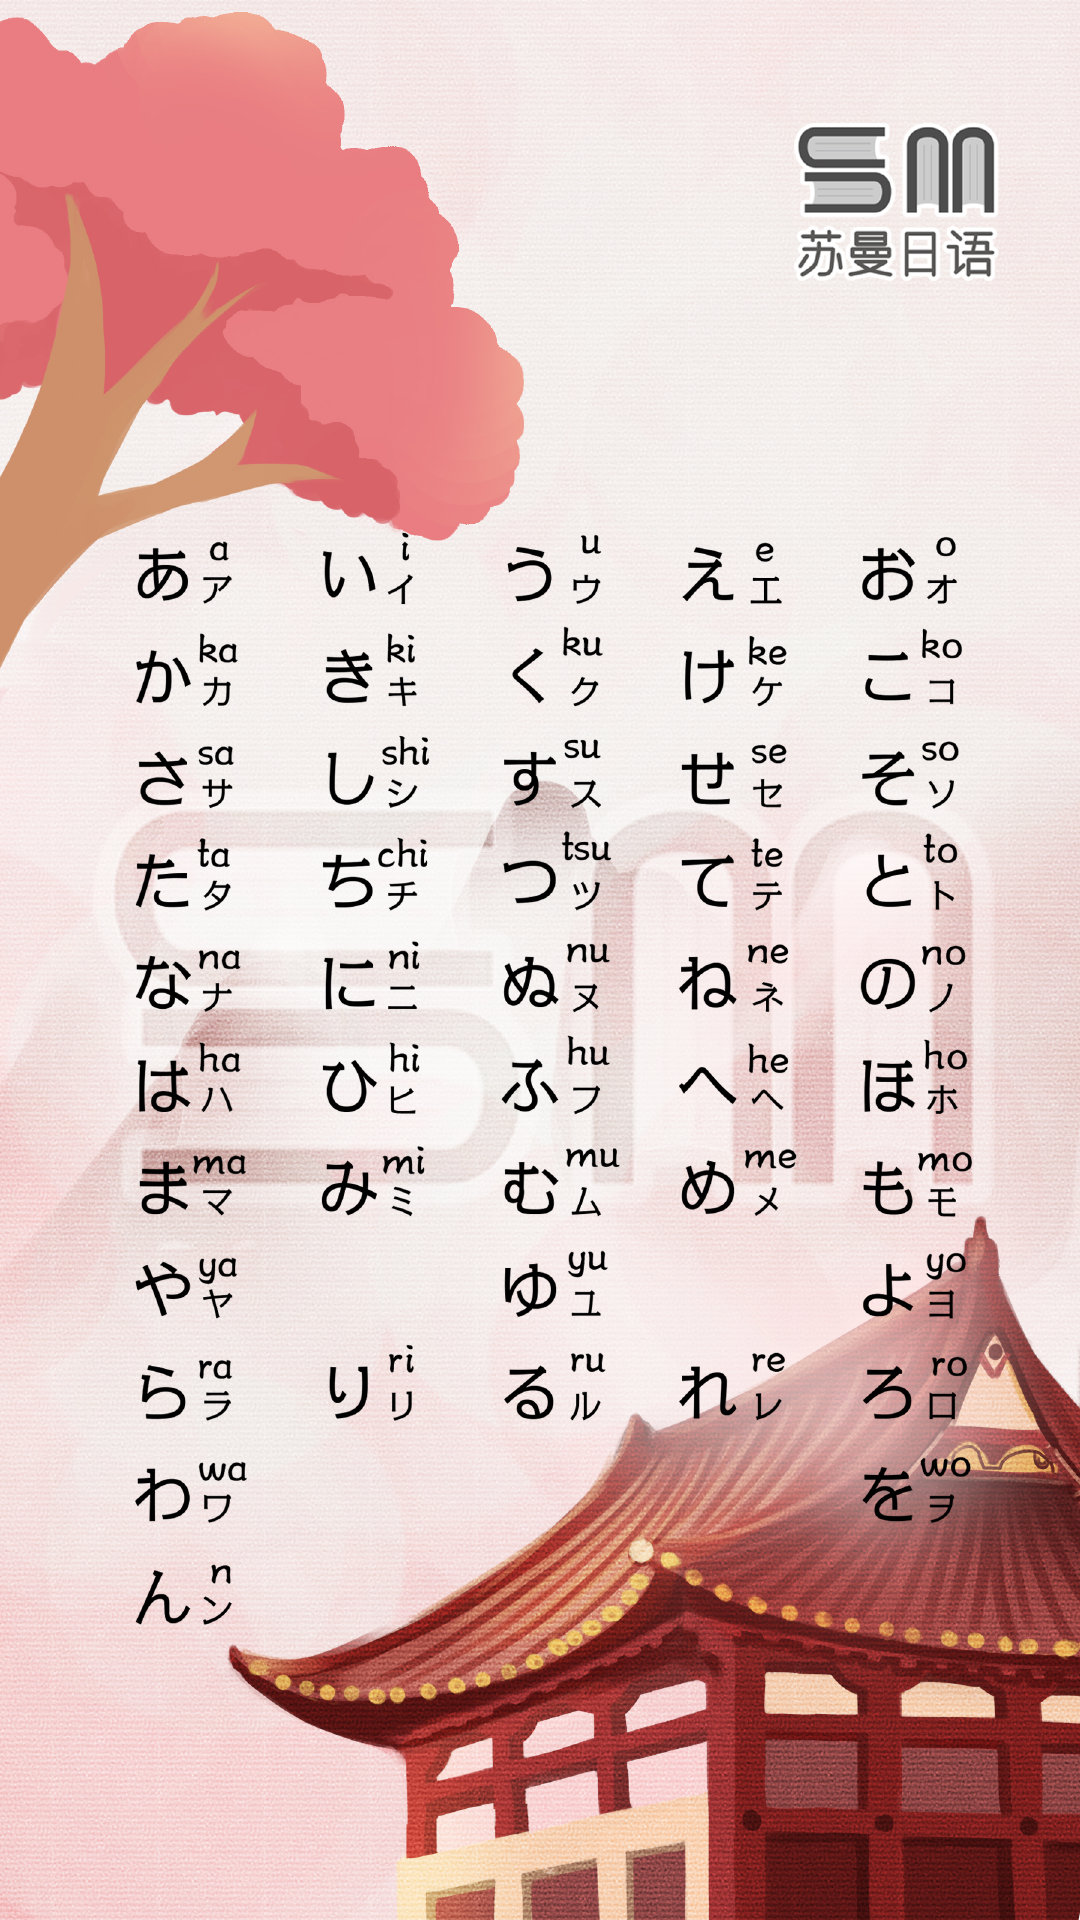 有没有日语五十音图好看的壁纸呢？ - 知乎